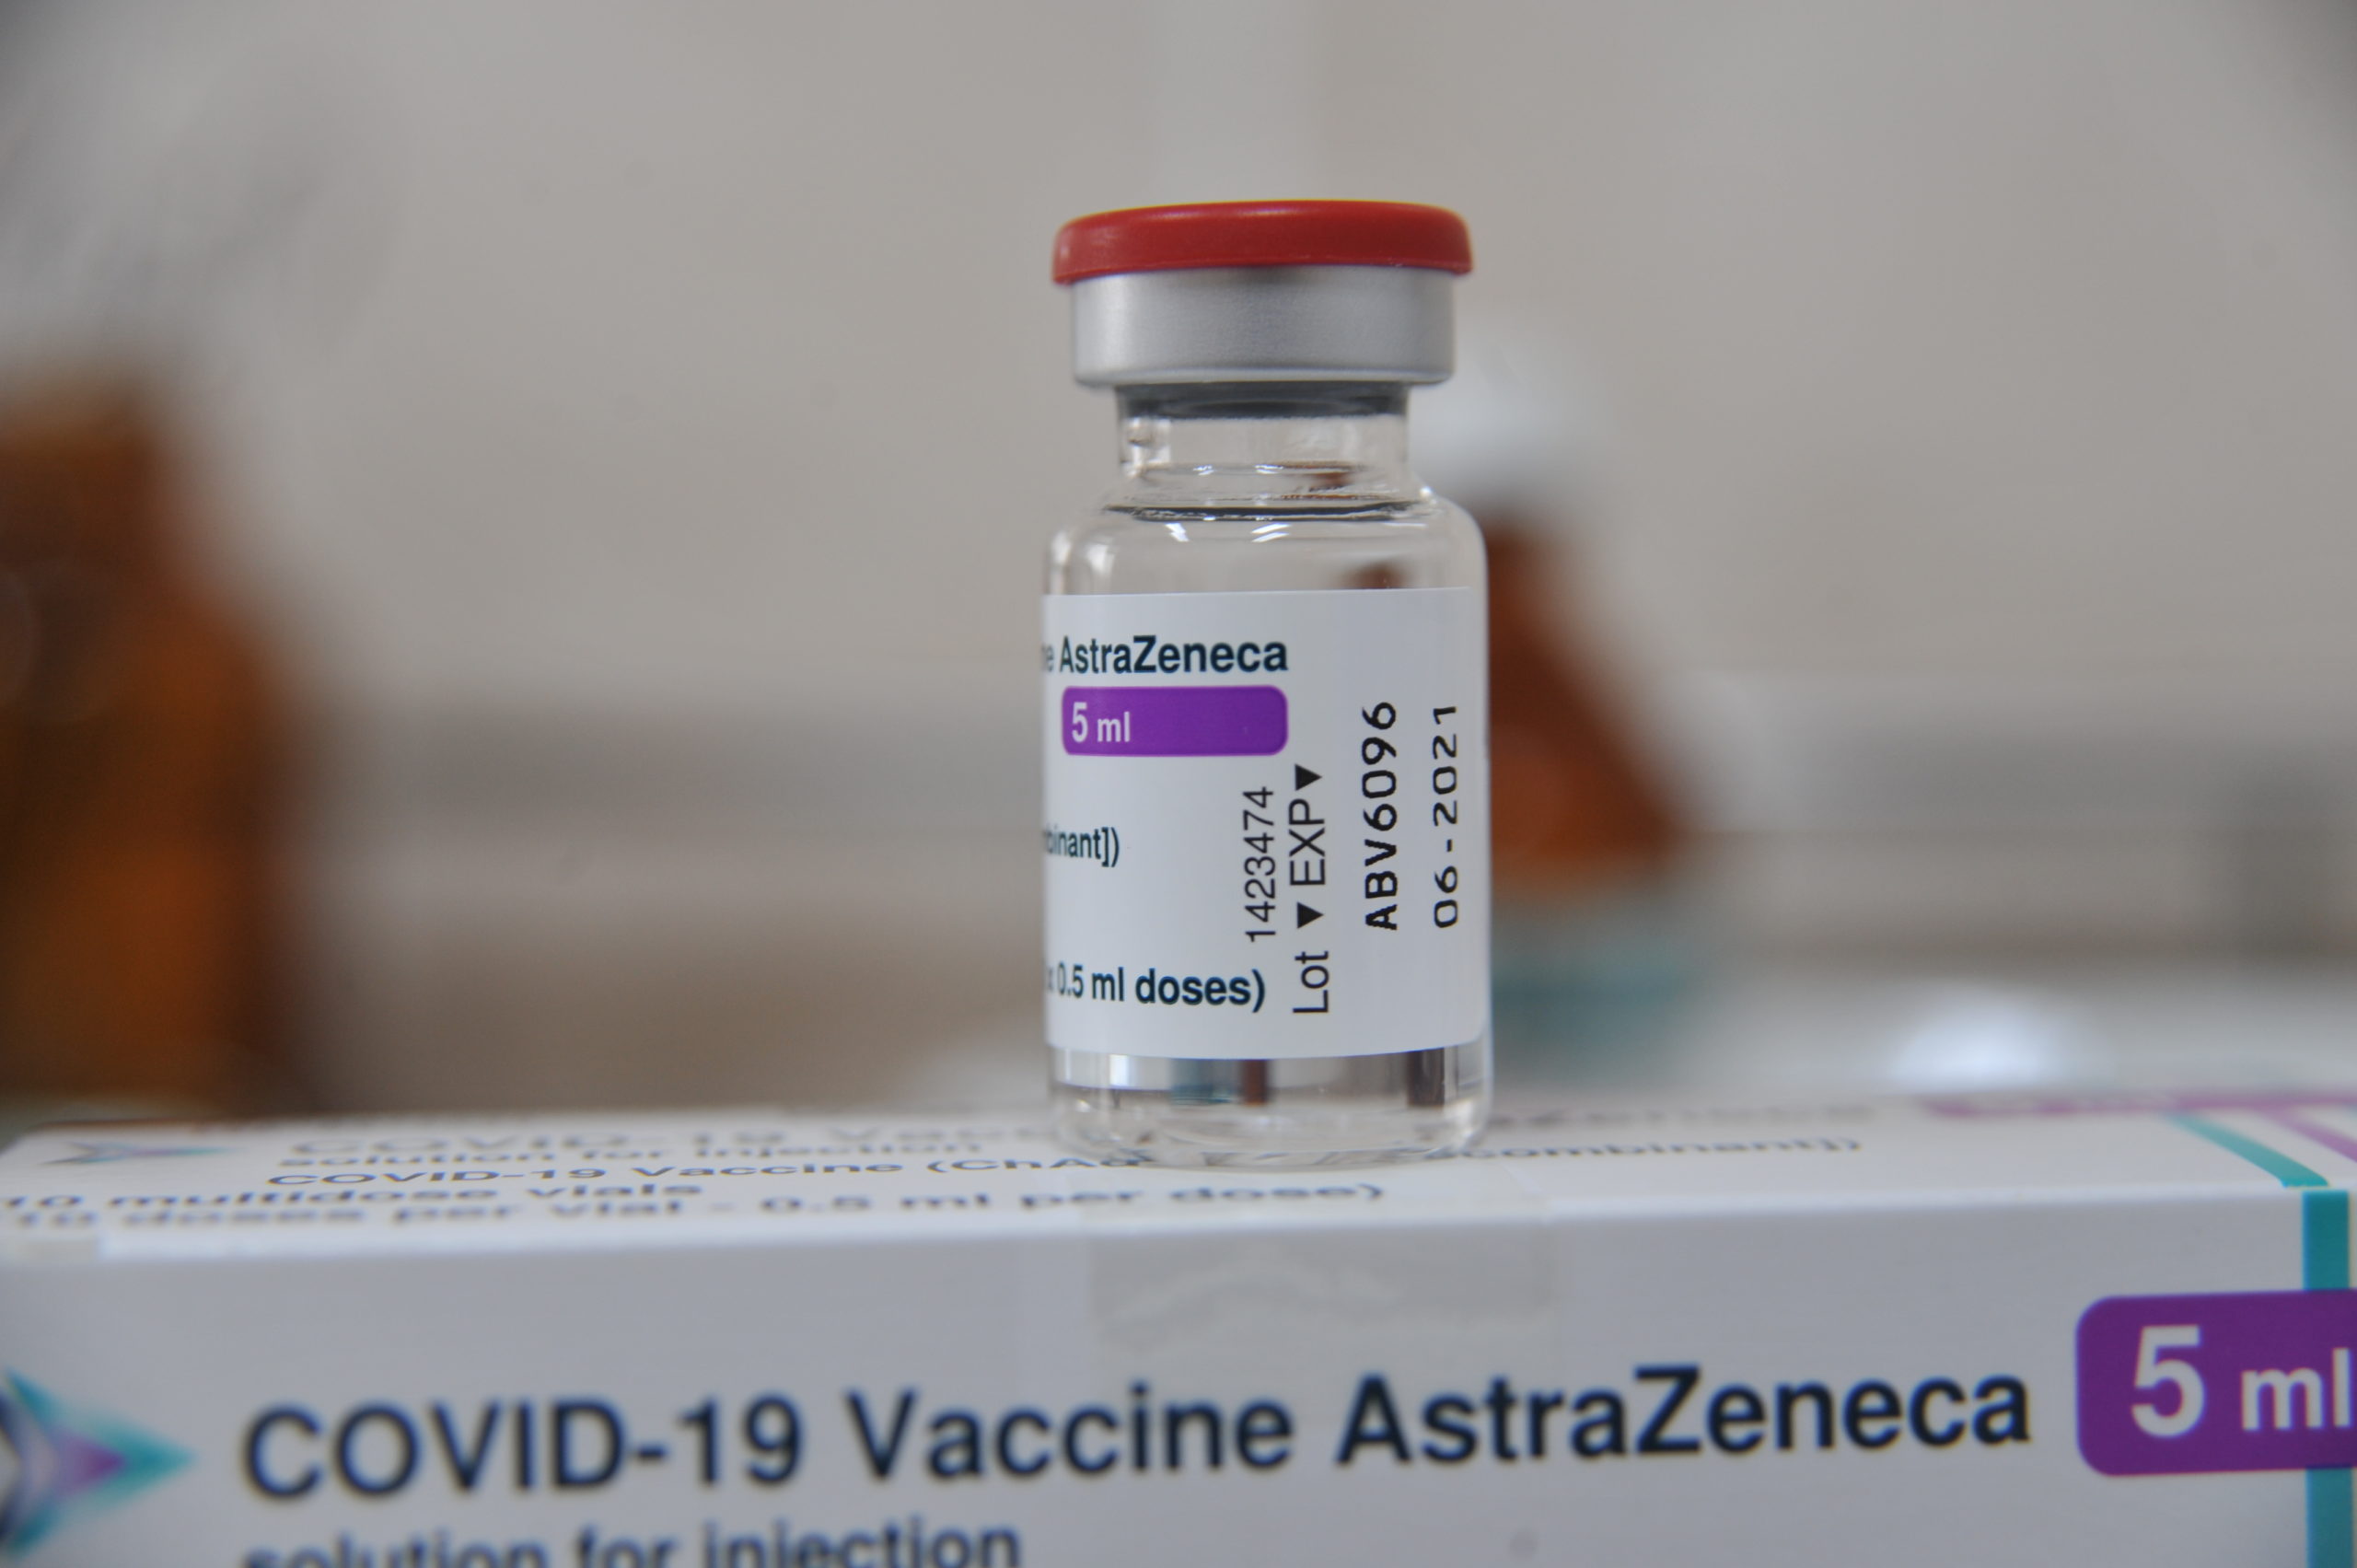 Oxford şi AstraZeneca au început testarea unui vaccin împotriva variantei Beta (sud-africane) a Sars-Cov-2